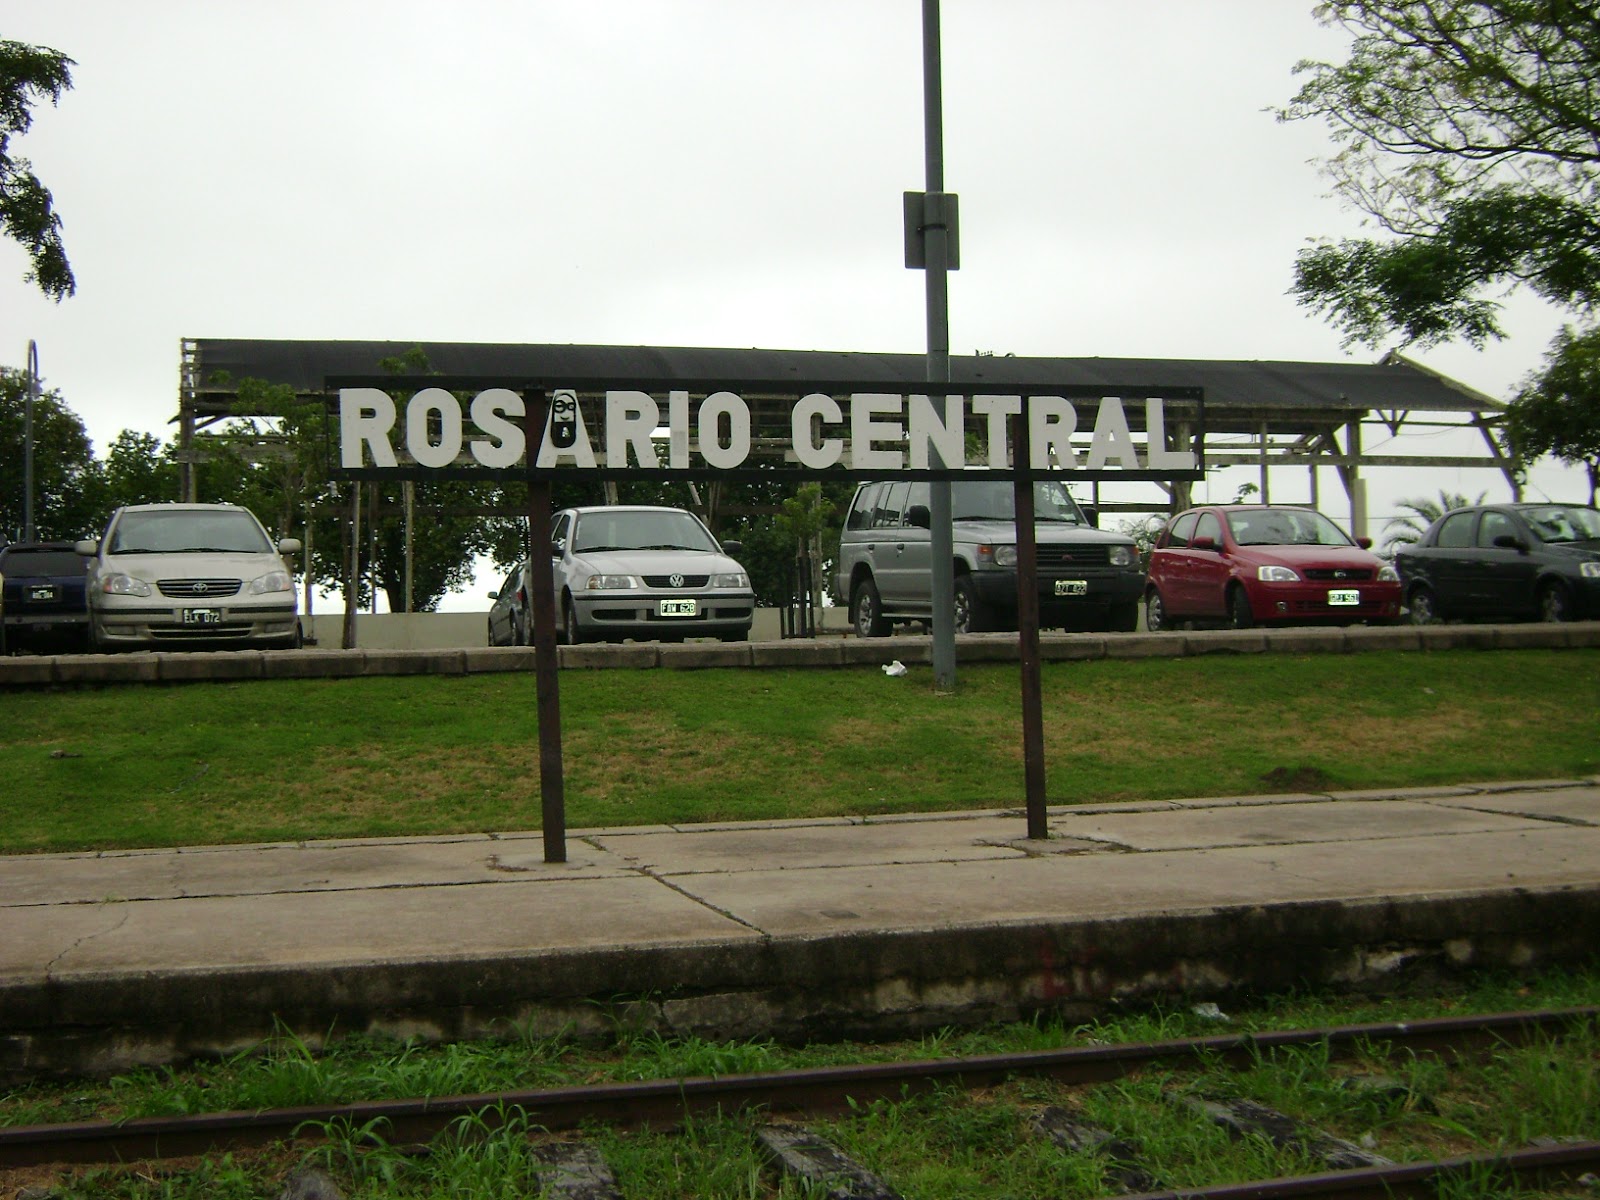 Rosario Central : Rosario Central le ganó a San Lorenzo, lo dejó complicado ...